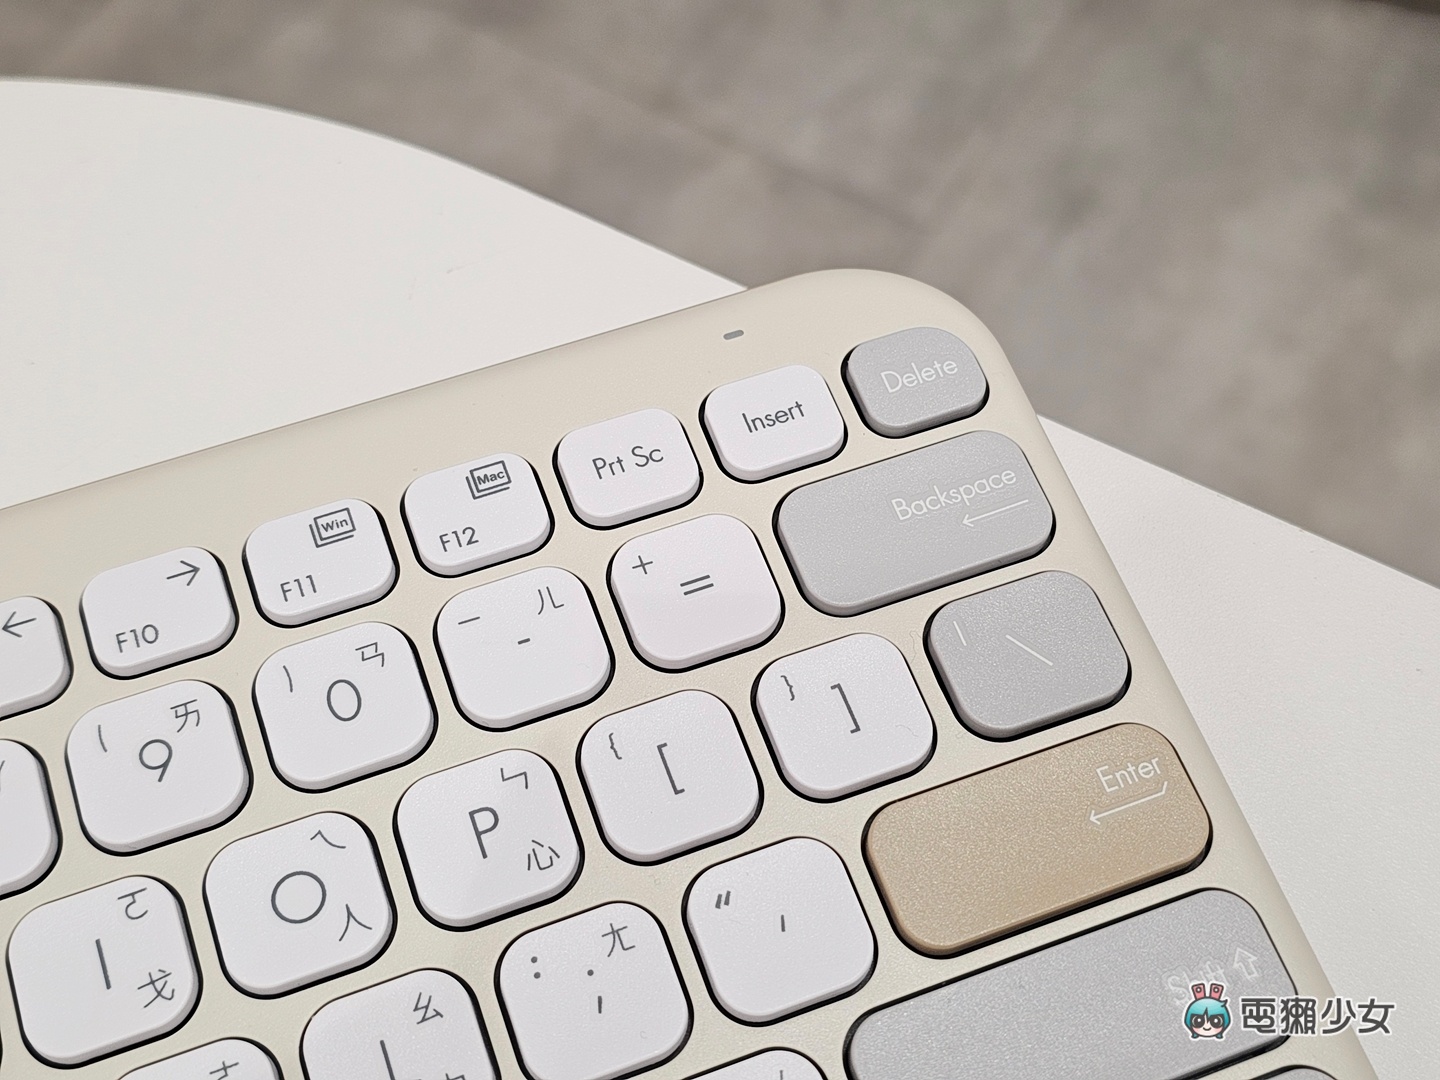 開箱｜糖粉系無線鍵盤 KW100、無線滑鼠 MD100：ASUS Marshmallow 系列溫柔配色與設計小巧思